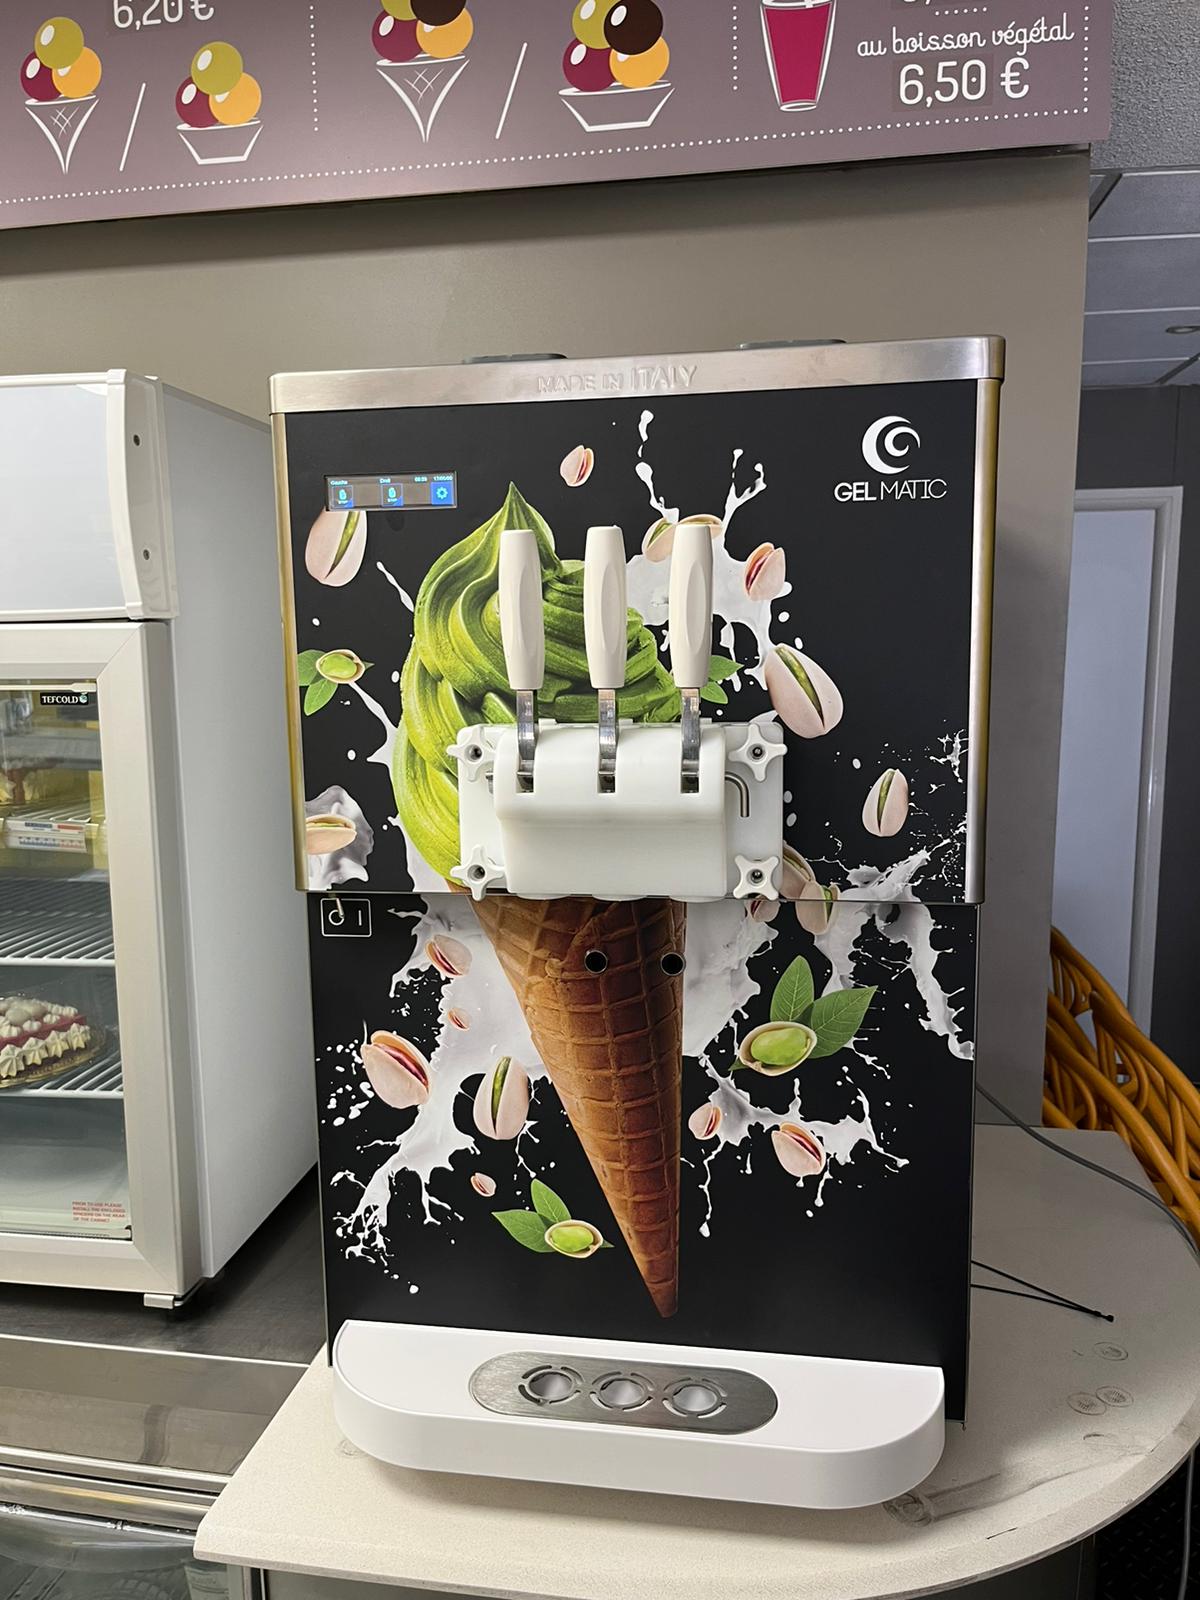 Gamme machine à glace italienne